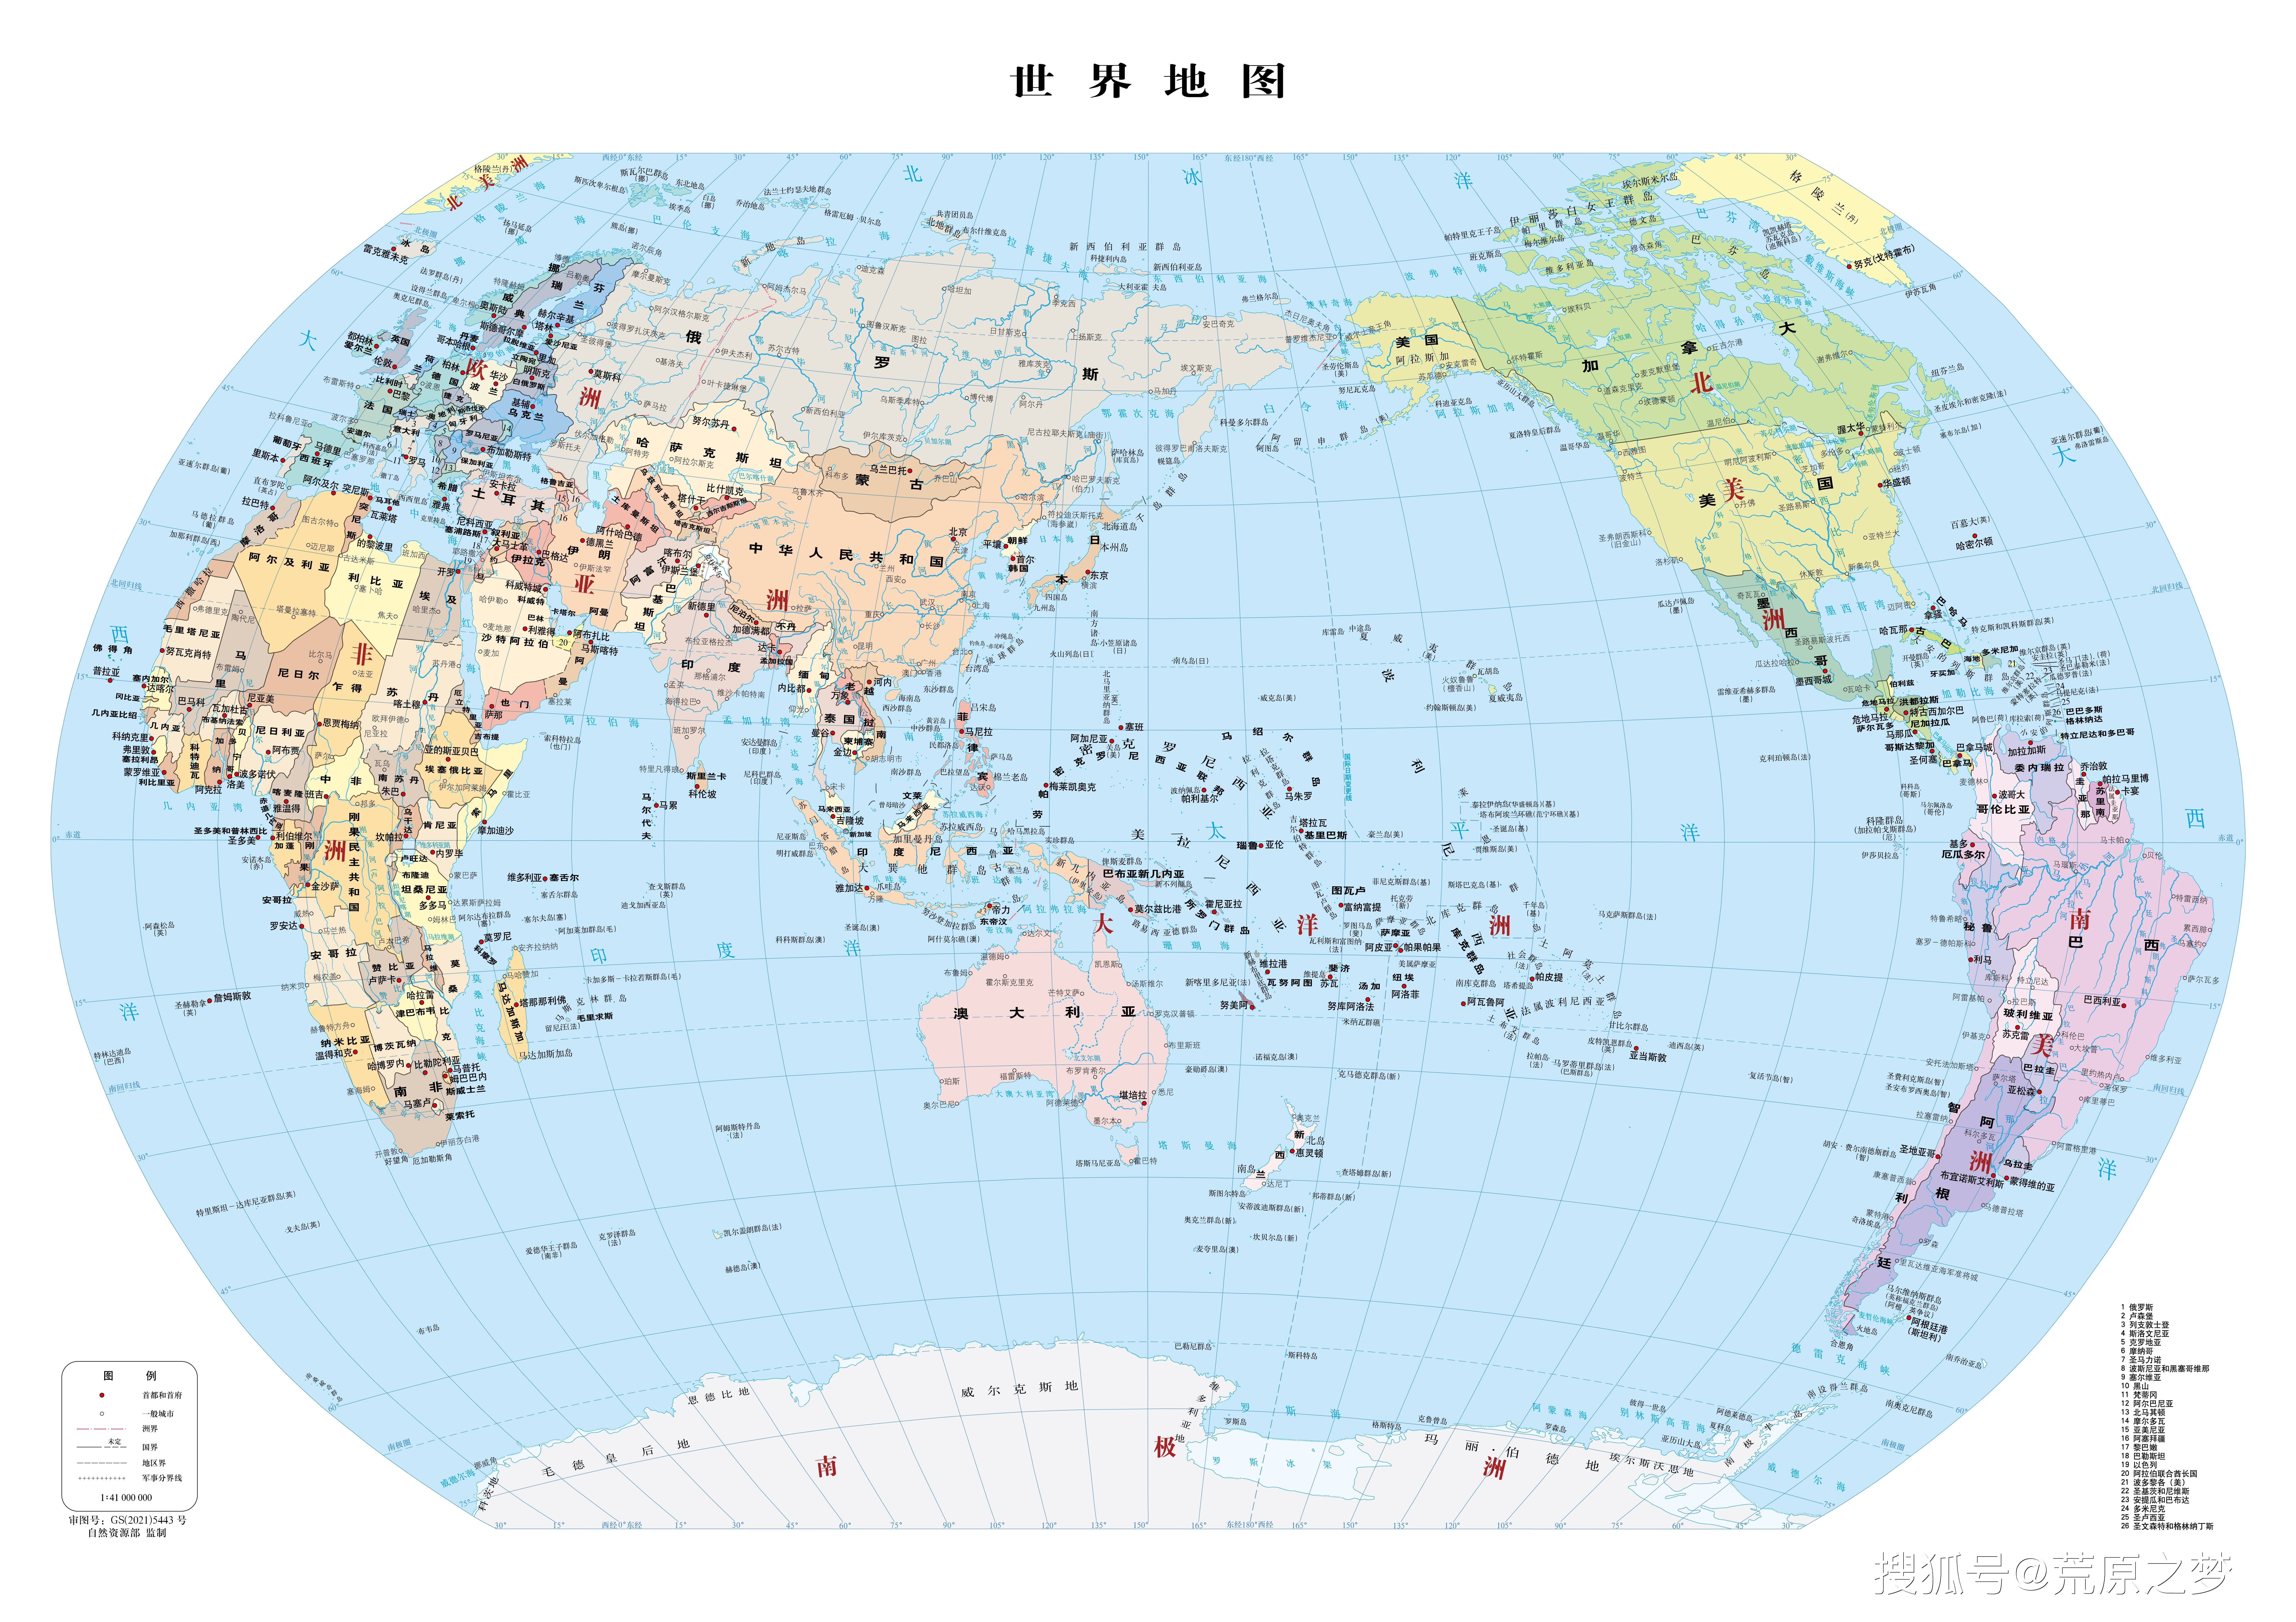 全球地图 全图 高清晰图片